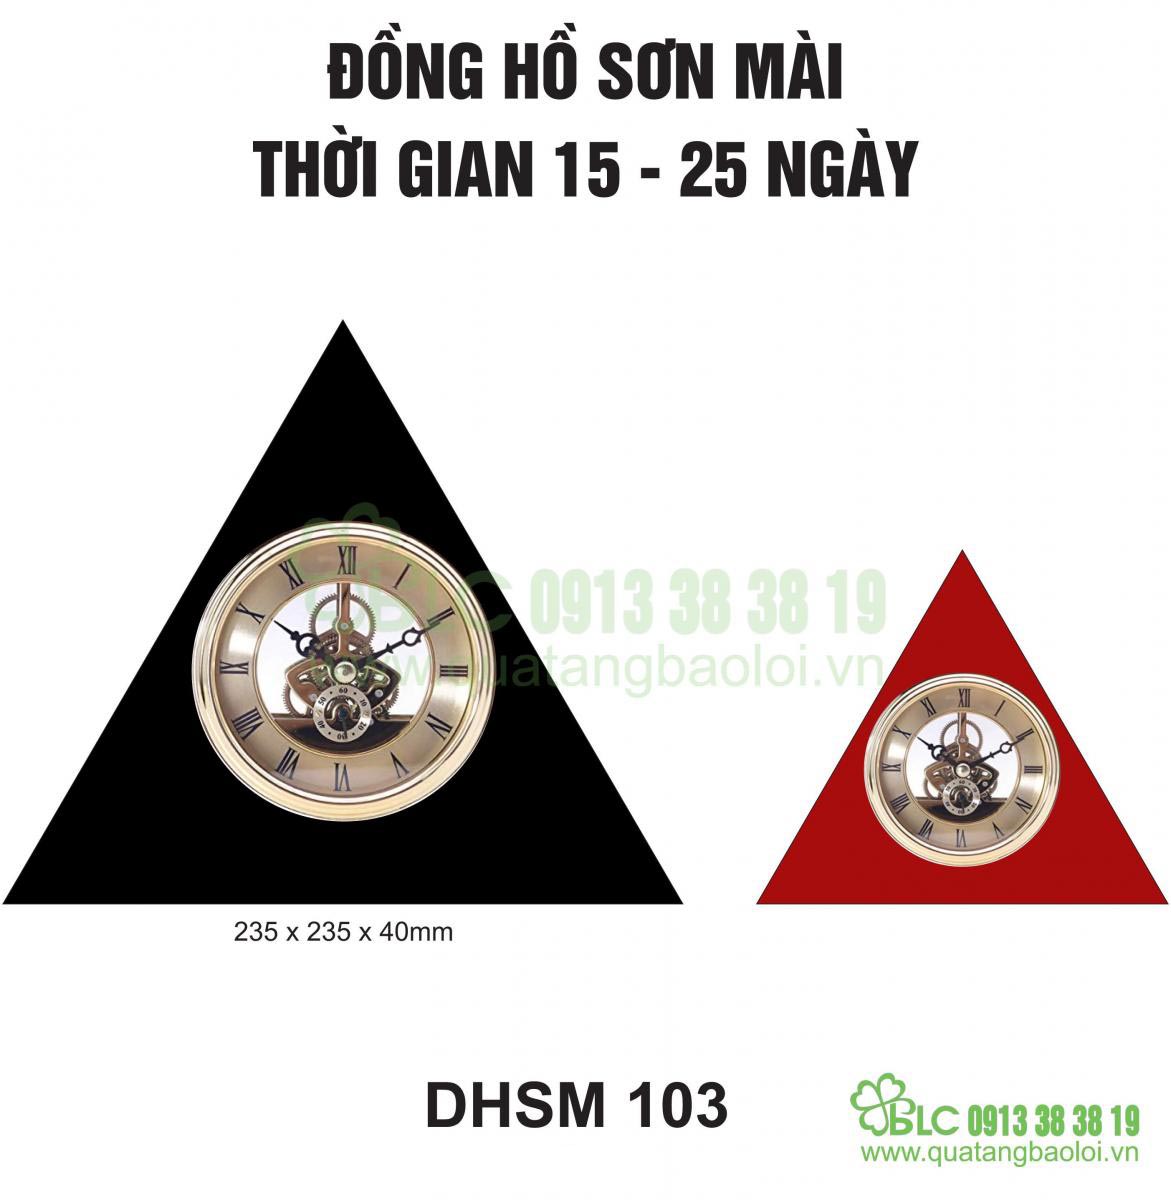 Đồng hồ để bàn sơn mài Hải Phòng - DHSM 103